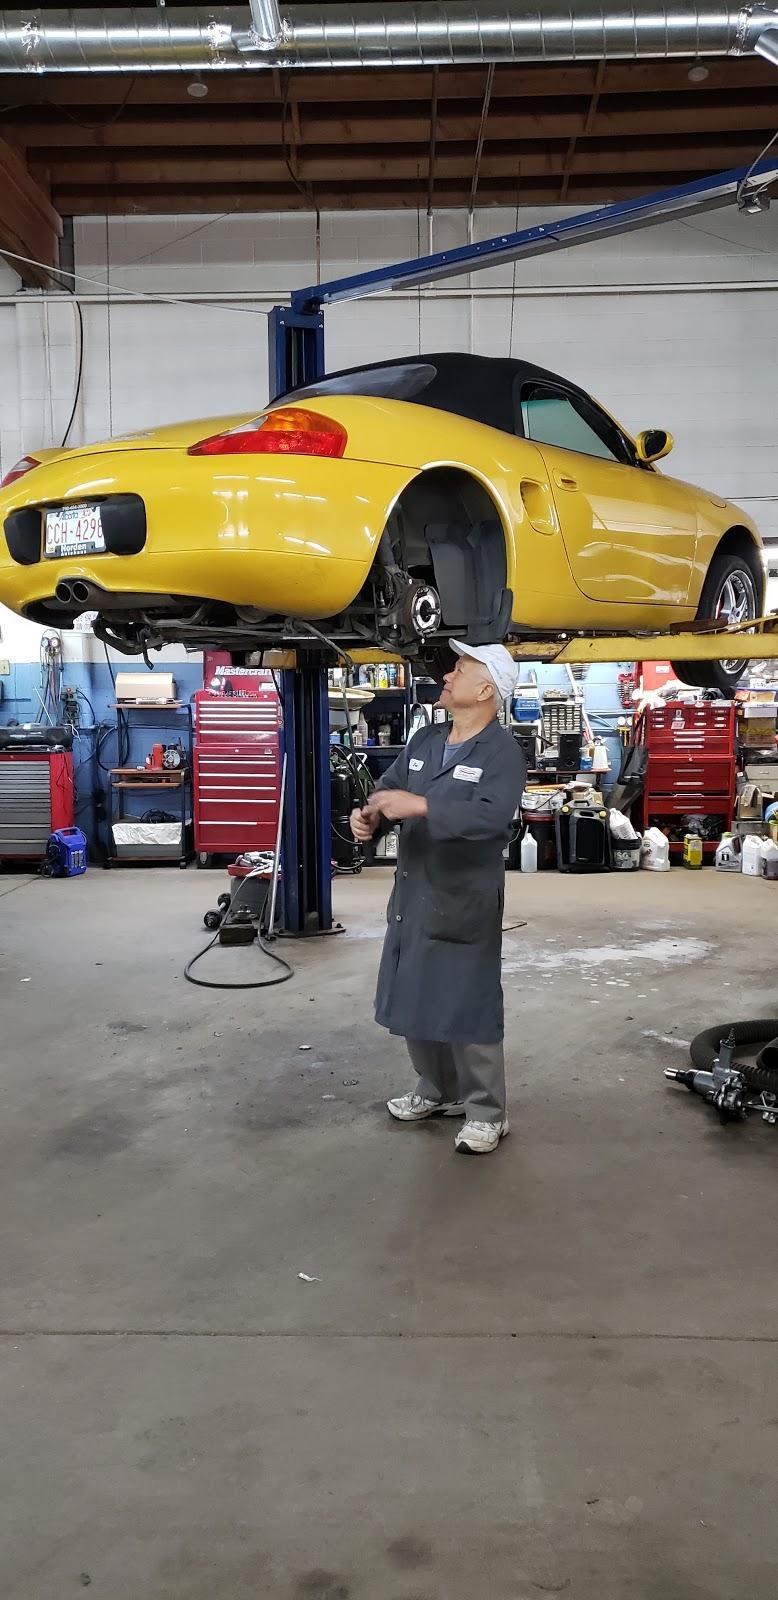 Center Auto Repair & Maintenance - Atelier de réparation automobile à Edmonton (AB) | AutoDir